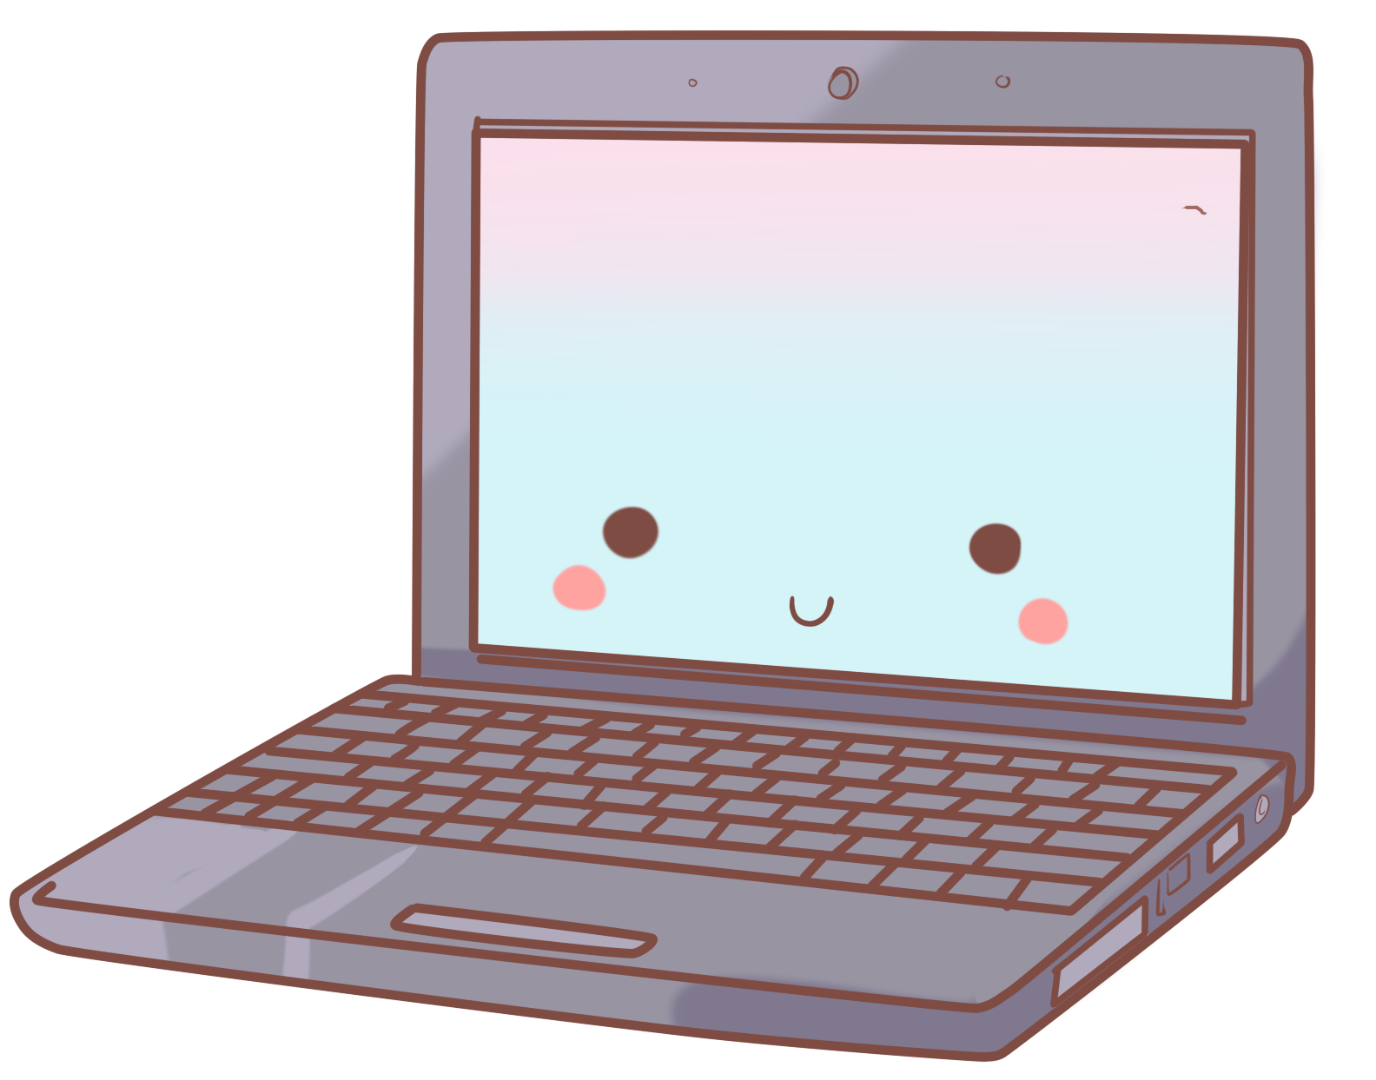 Kawaii clipart laptop, Kawaii laptop Transparent FREE for